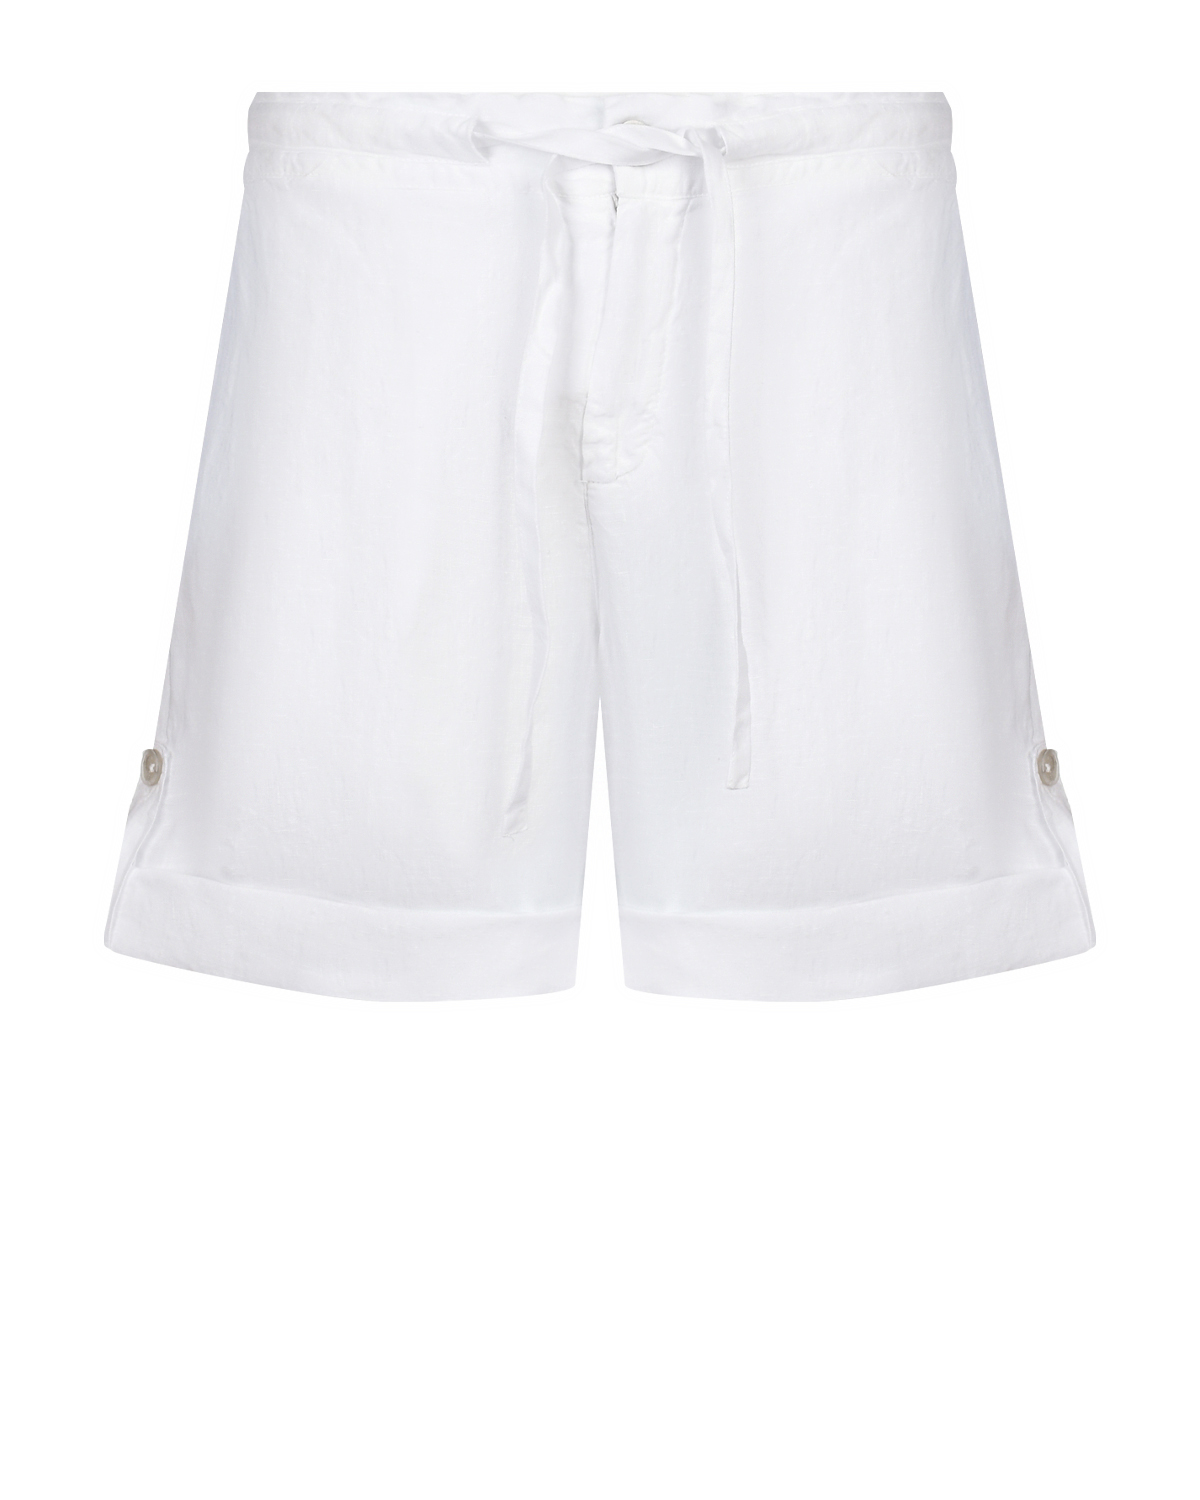 Льняные шорты с поясом на кулиске, белые 120% Lino белые шорты для беременных pietro brunelli